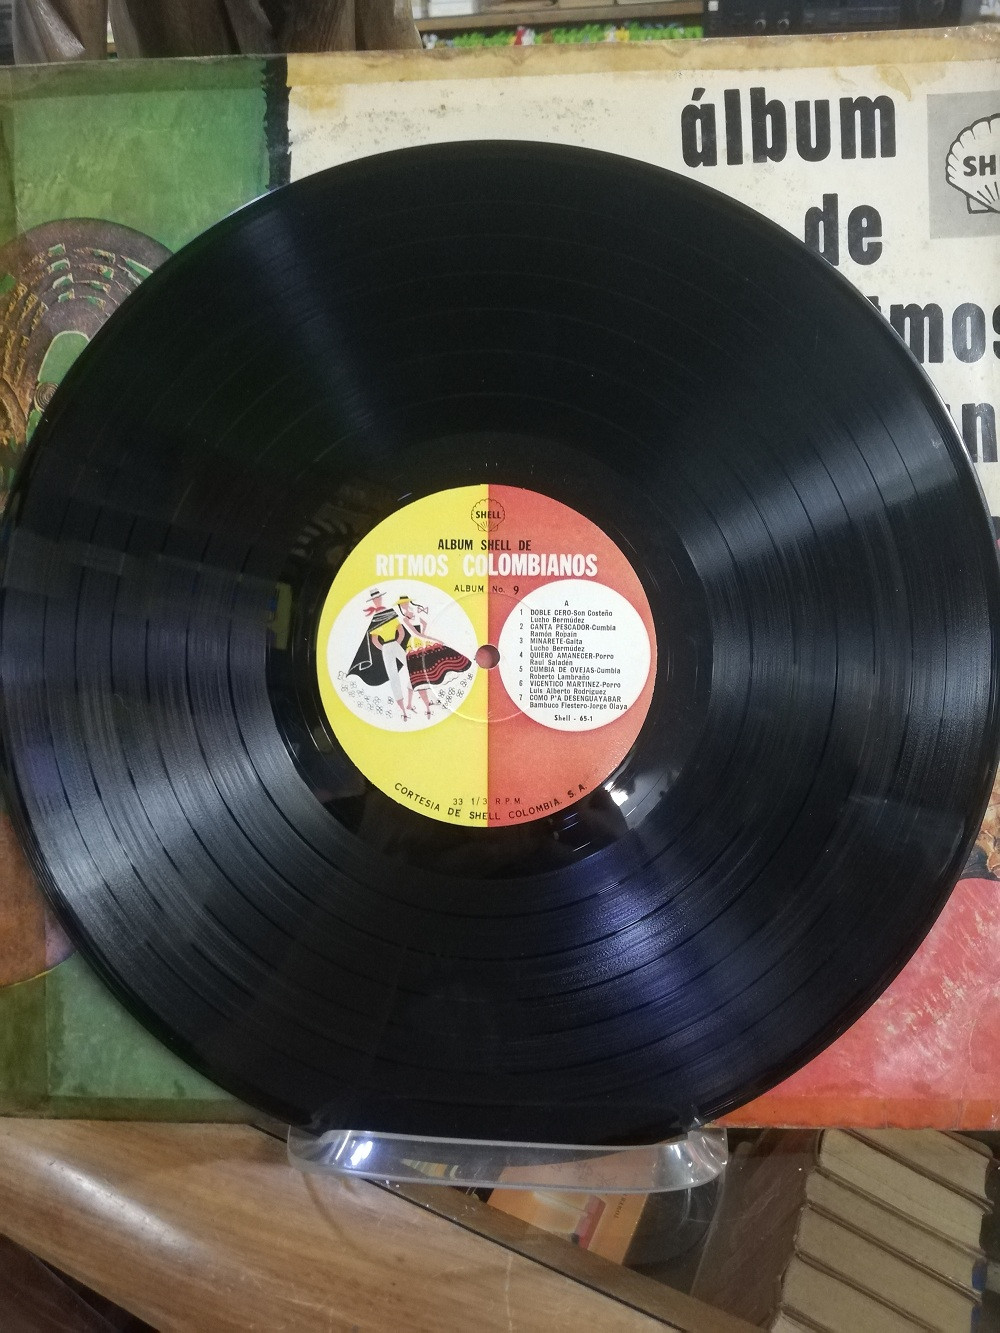 Imagen LP ALBUM DE RITMOS COLOMBIANOS - ALBUM DE RITMOS COLOMBIANOS No. 9 4